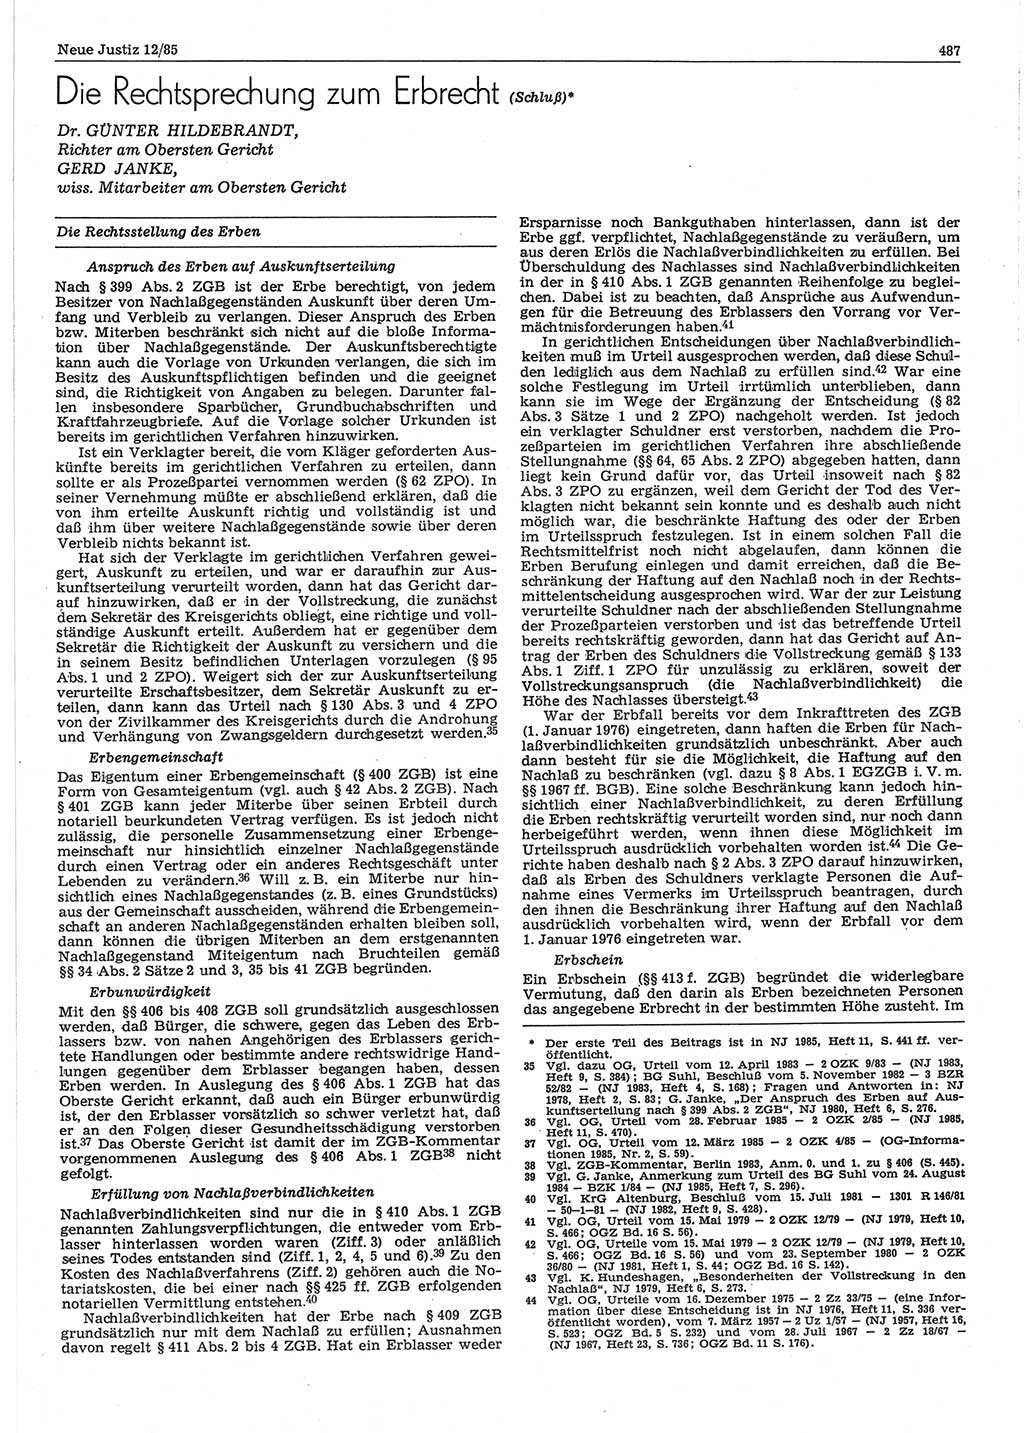 Neue Justiz (NJ), Zeitschrift für sozialistisches Recht und Gesetzlichkeit [Deutsche Demokratische Republik (DDR)], 39. Jahrgang 1985, Seite 487 (NJ DDR 1985, S. 487)